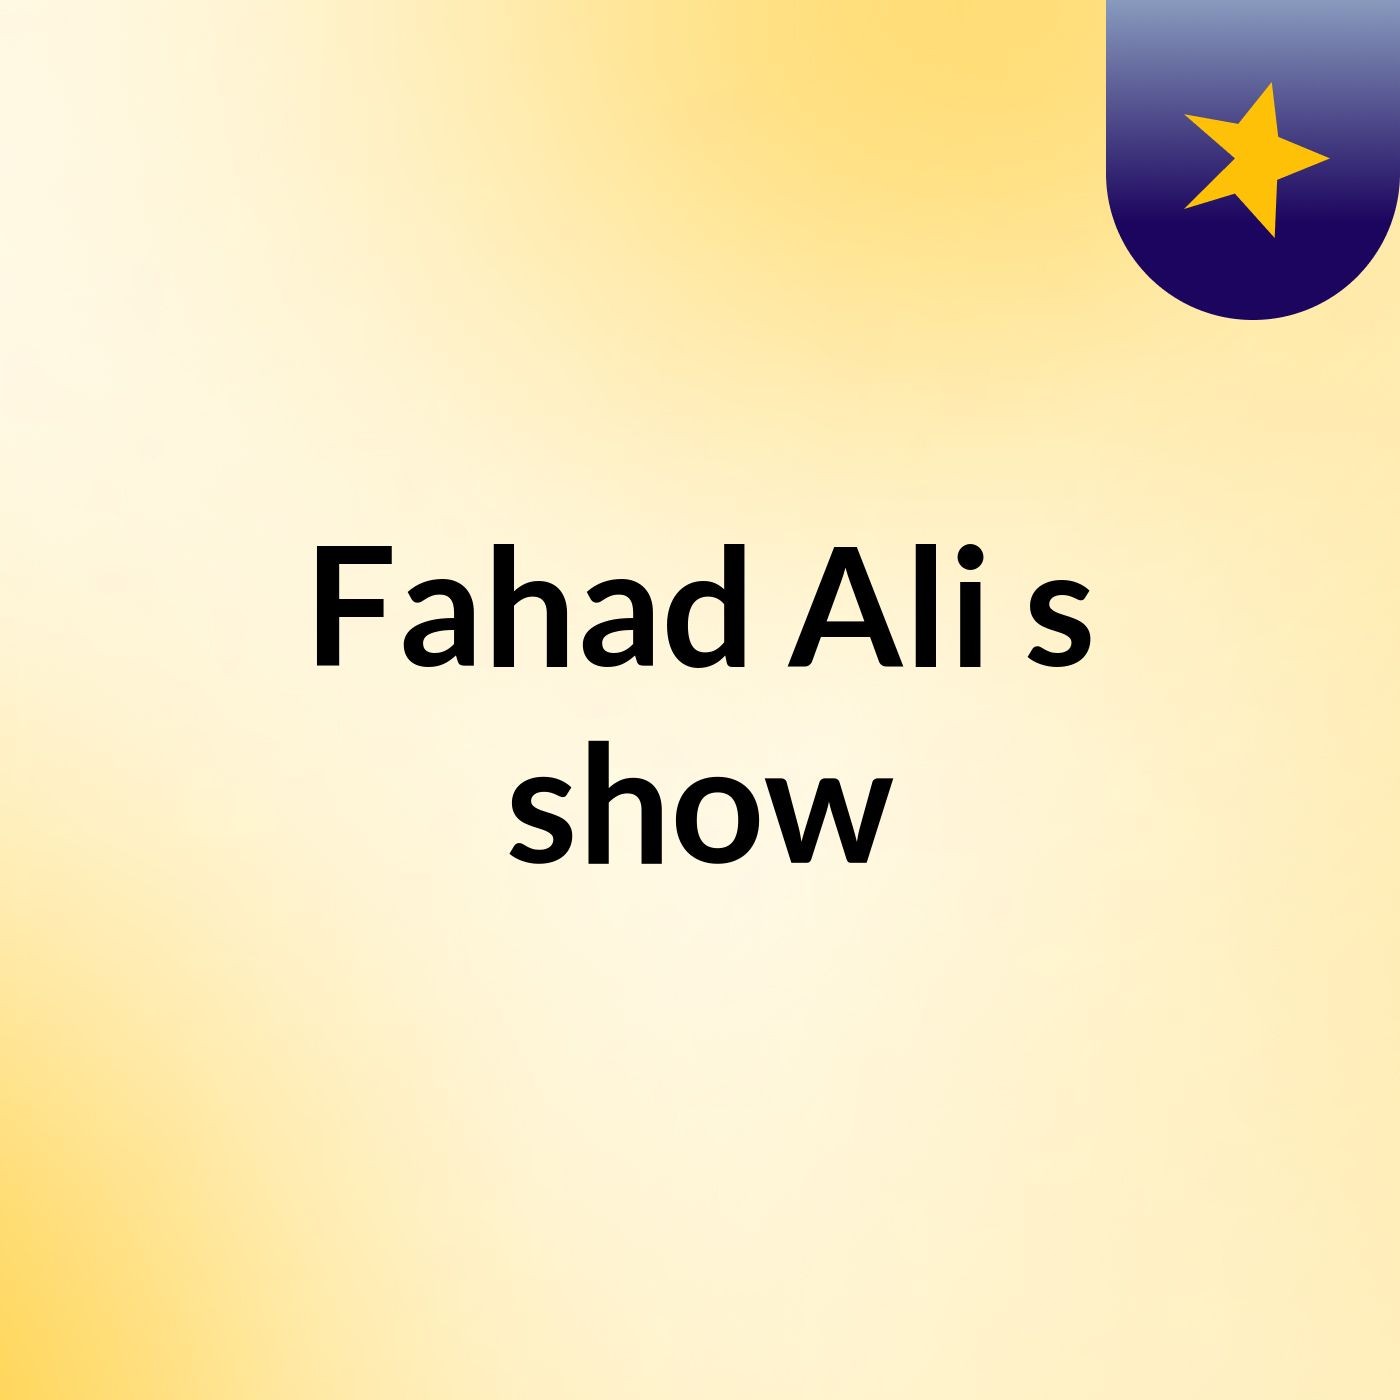 Fahad Ali's show